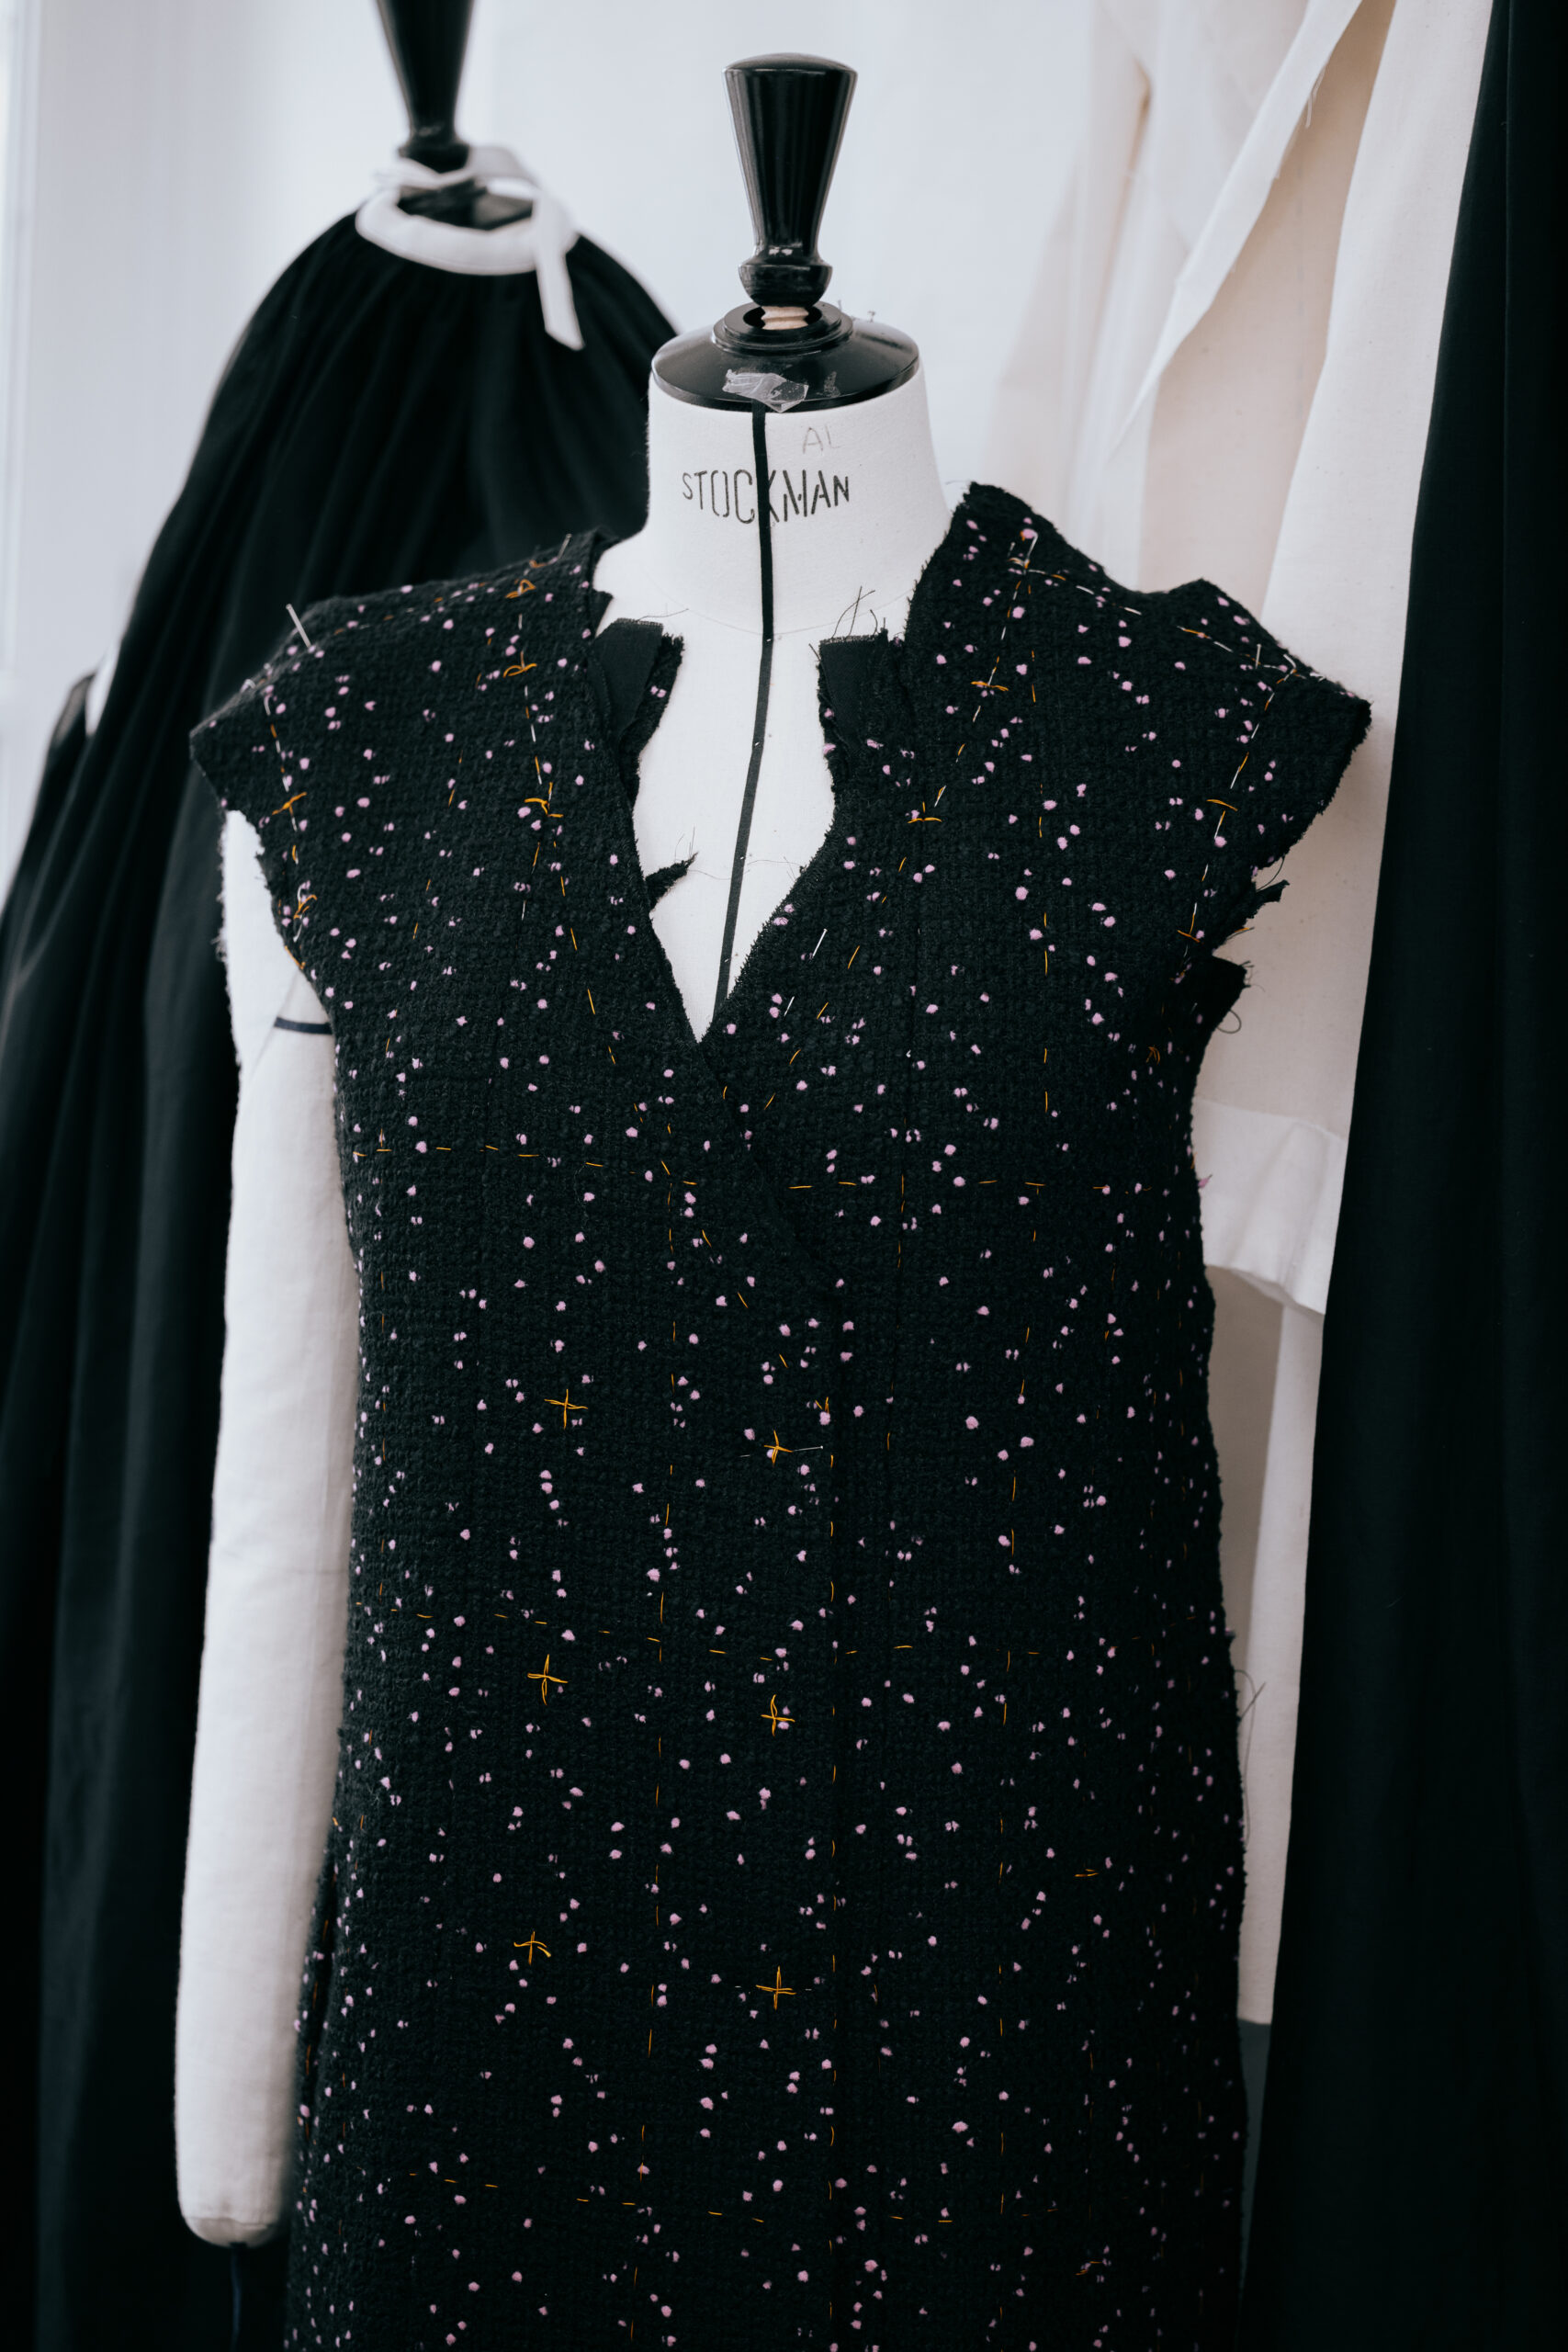 Savoir Faire de Chanel para su colección de Alta Costura